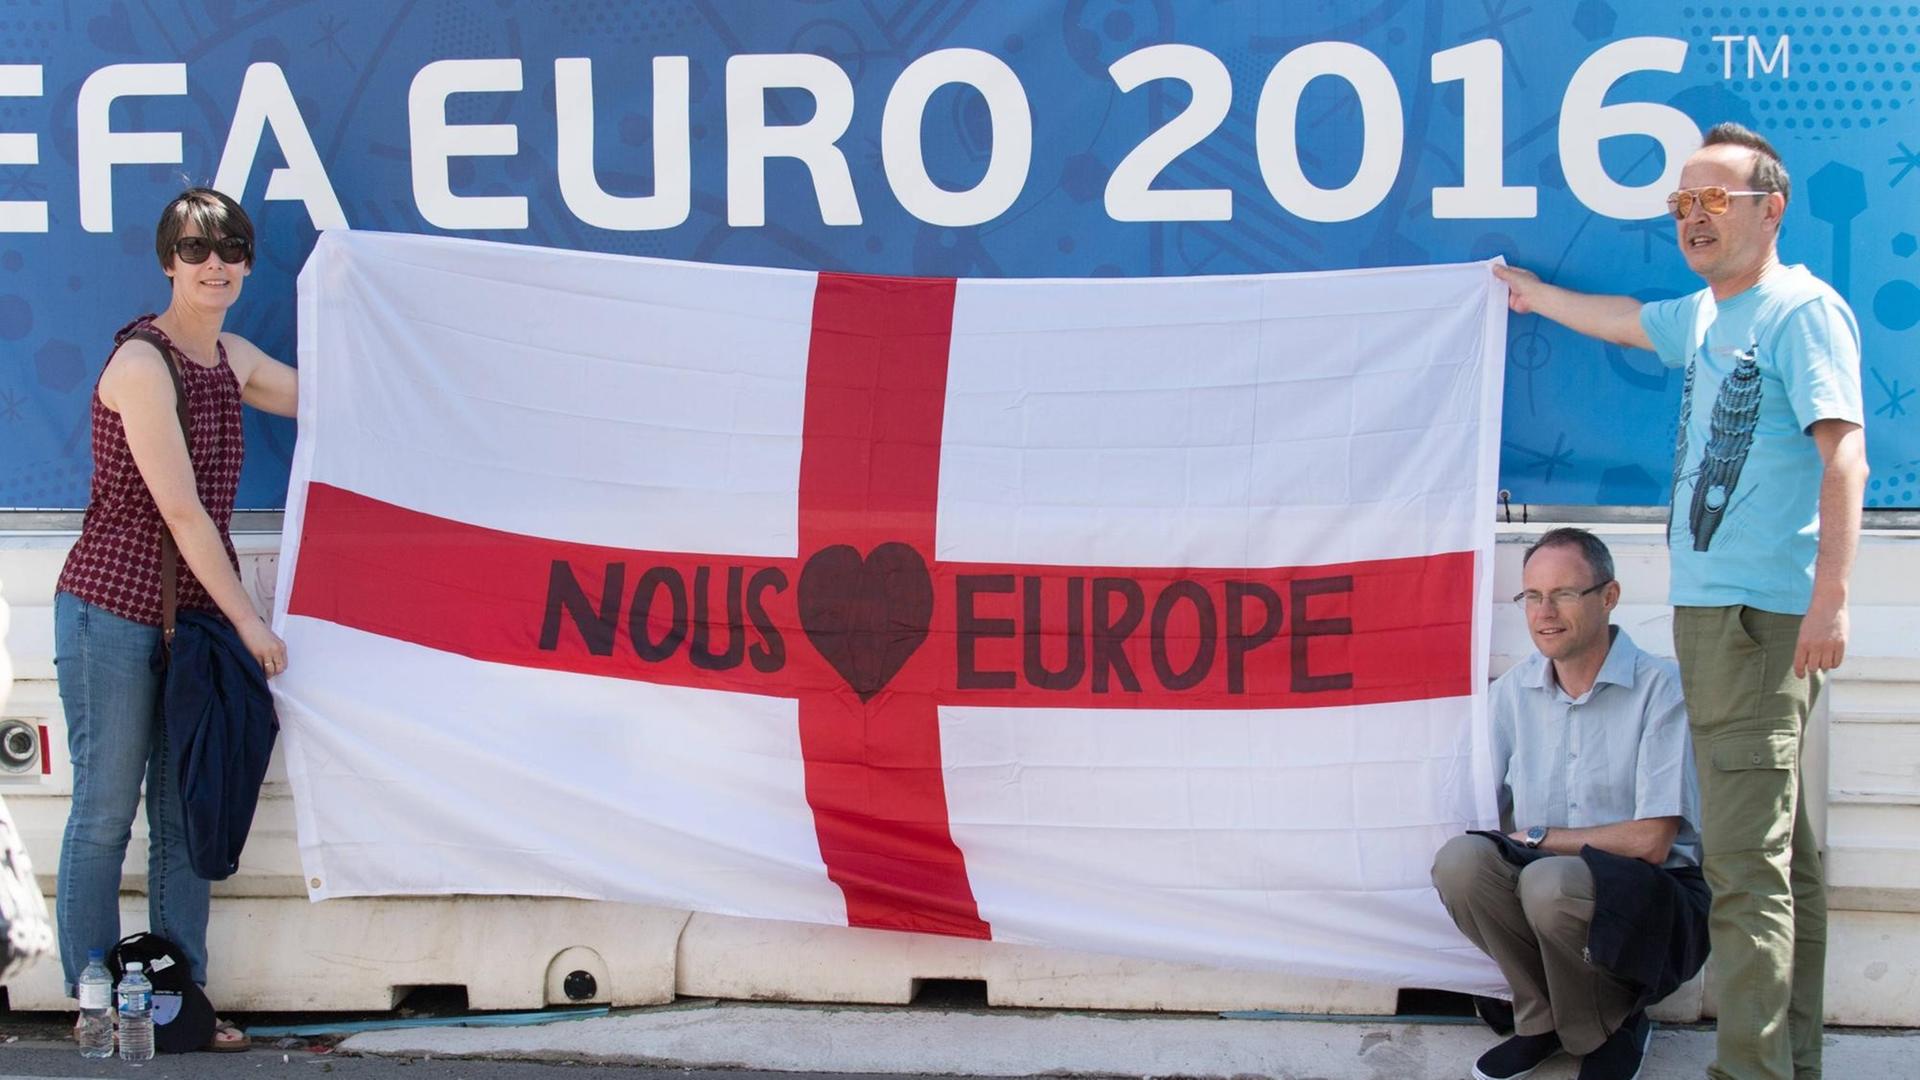 England-Fans in Lens mit Europa-Bekenntnis auf der Nationalfahne.